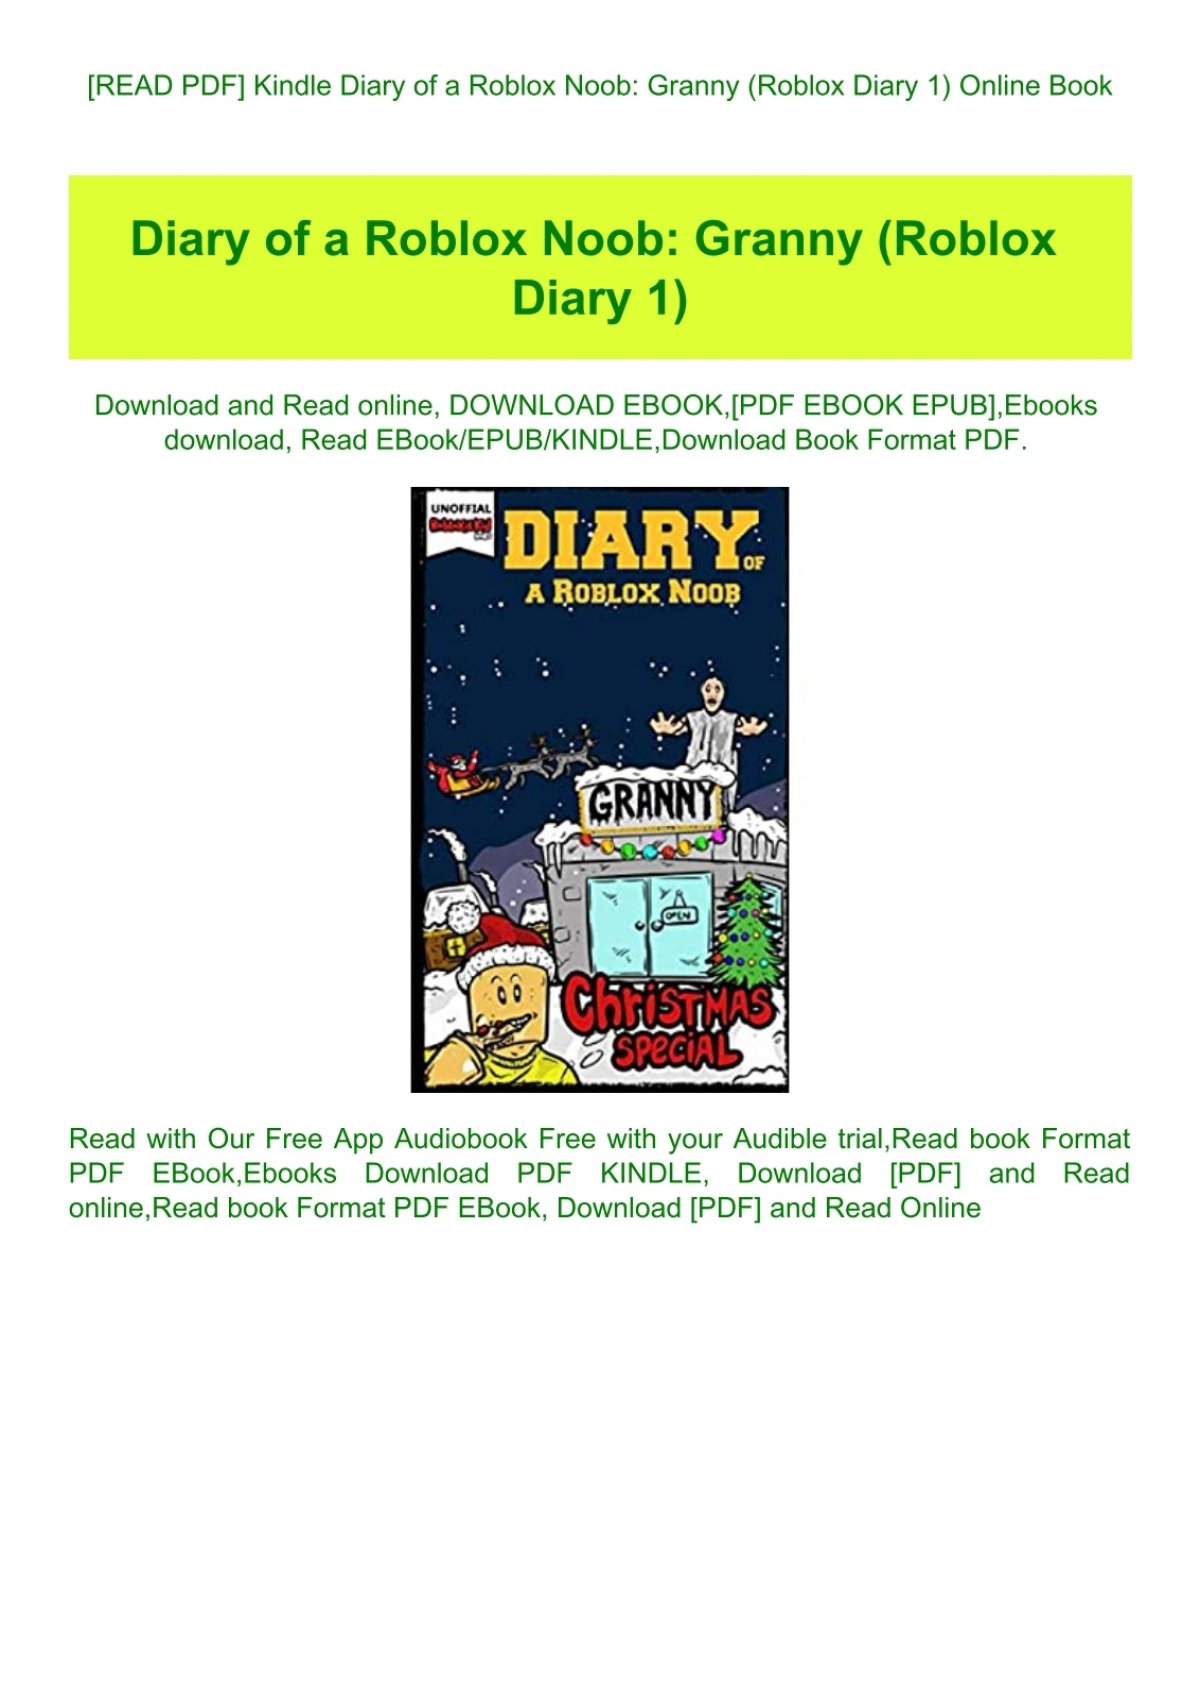 Read Pdf Kindle Diary Of A Roblox Noob Granny Roblox Diary 1 Online Book - roblox books diary of a roblox noob